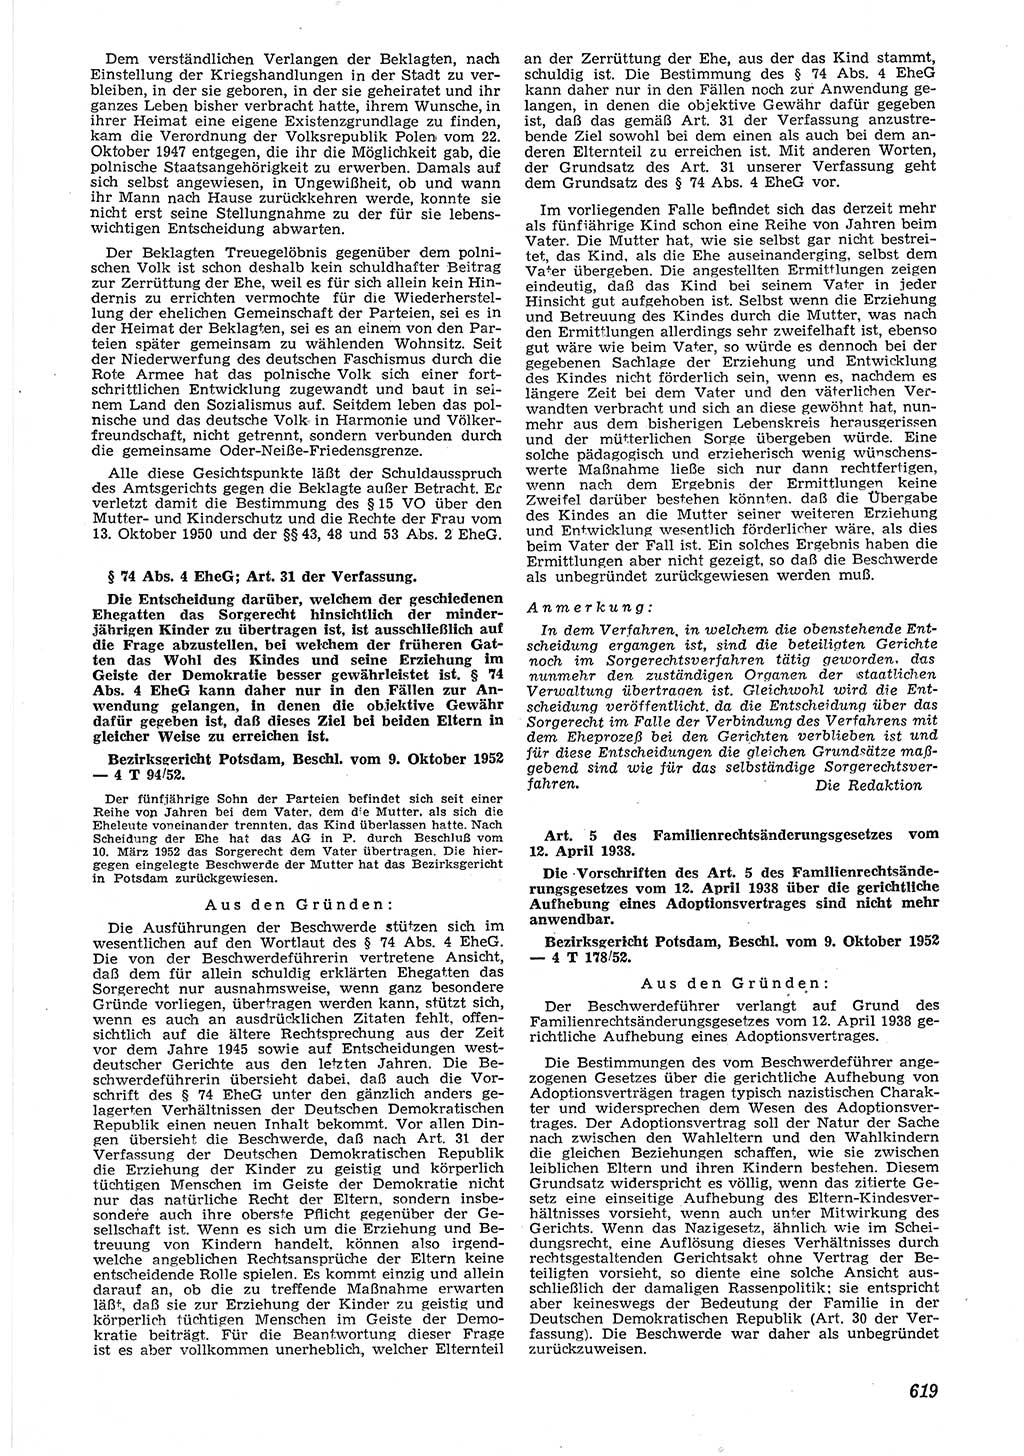 Neue Justiz (NJ), Zeitschrift für Recht und Rechtswissenschaft [Deutsche Demokratische Republik (DDR)], 6. Jahrgang 1952, Seite 619 (NJ DDR 1952, S. 619)